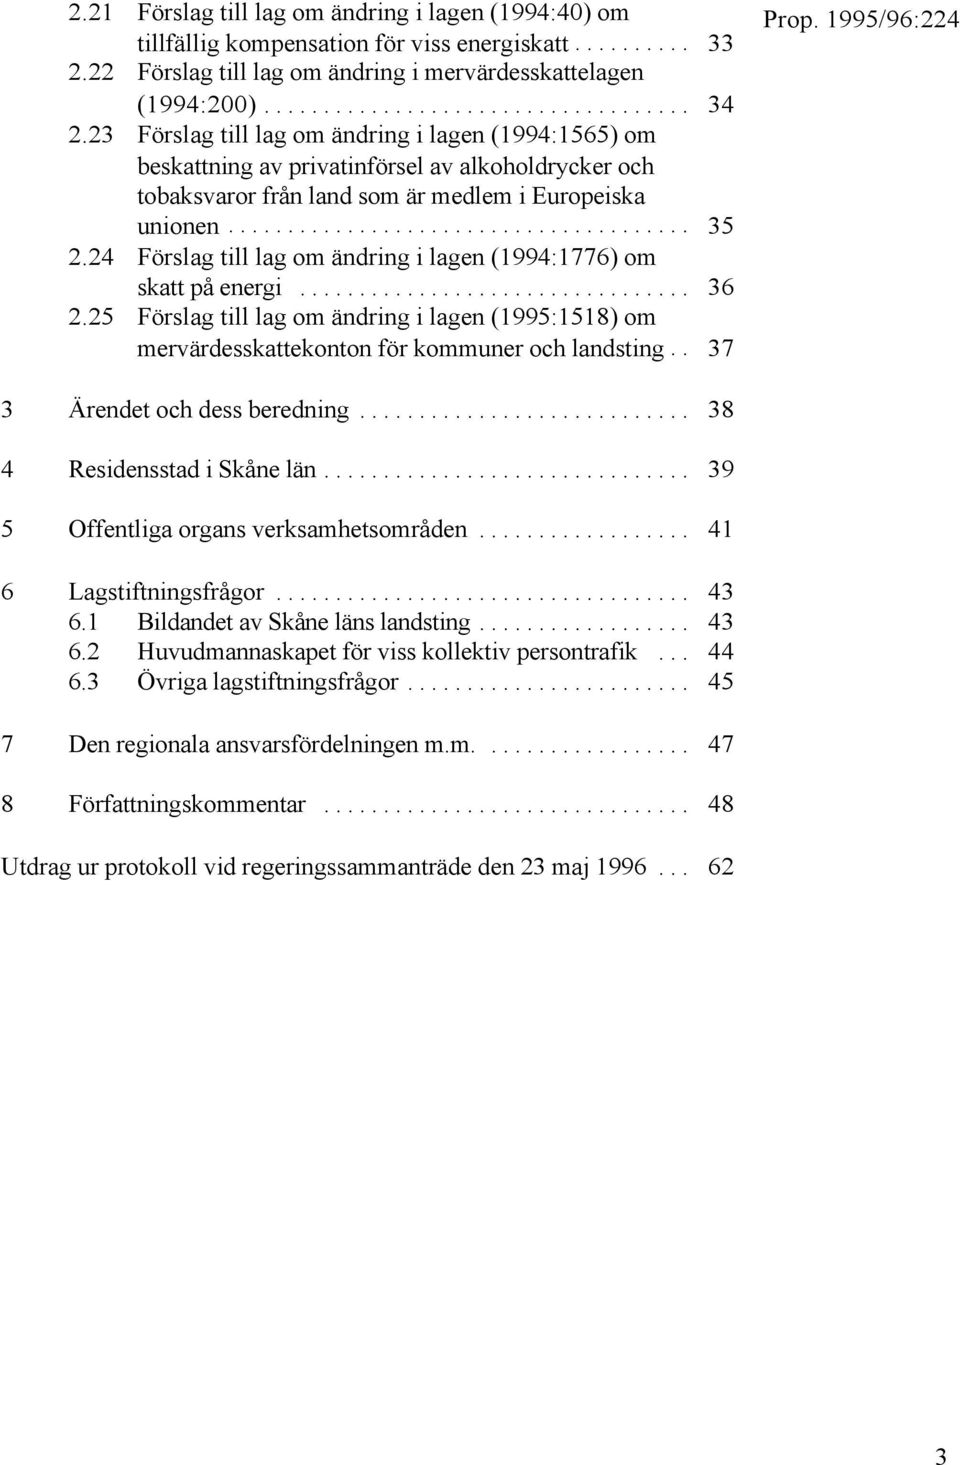 24 Förslag till lag om ändring i lagen (1994:1776) om skatt på energi... 36 2.25 Förslag till lag om ändring i lagen (1995:1518) om mervärdesskattekonton för kommuner och landsting.